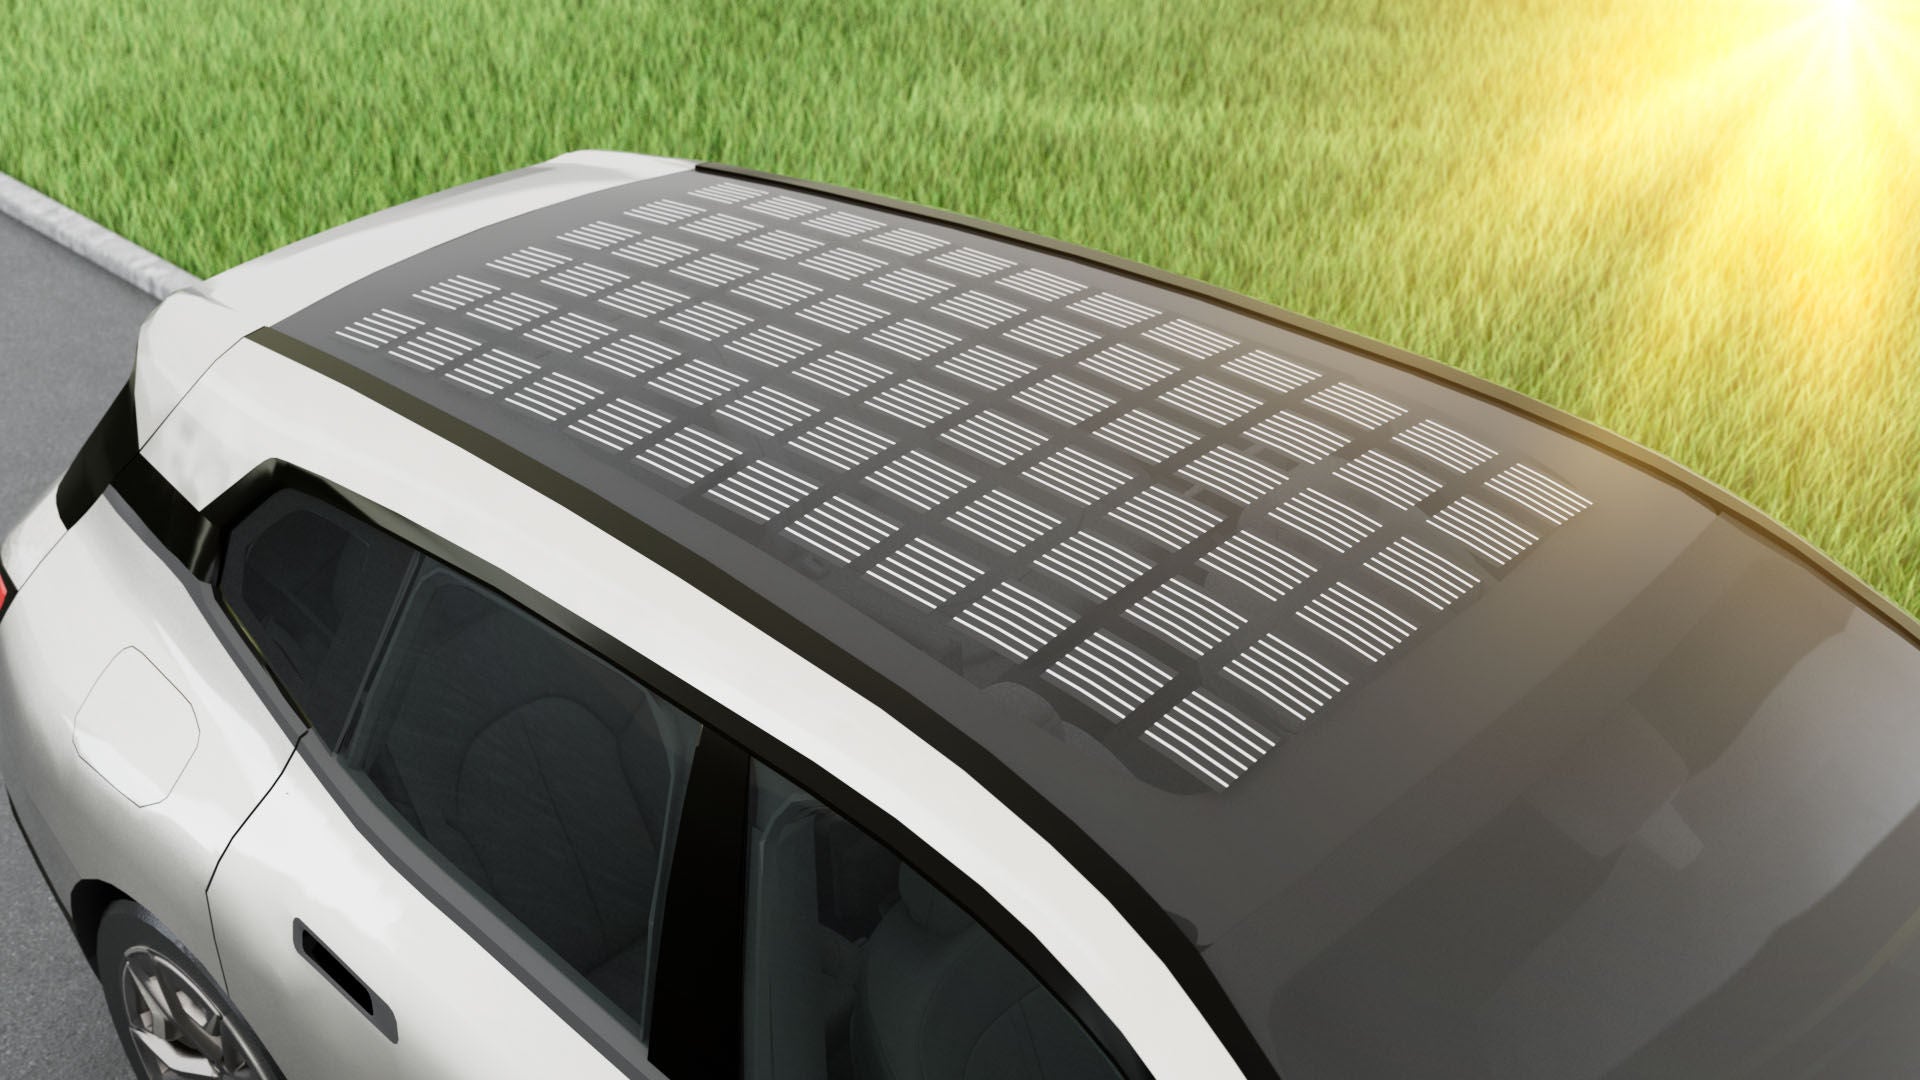 Integrierte Solarzellen im Glasdach des Fahrzeugs